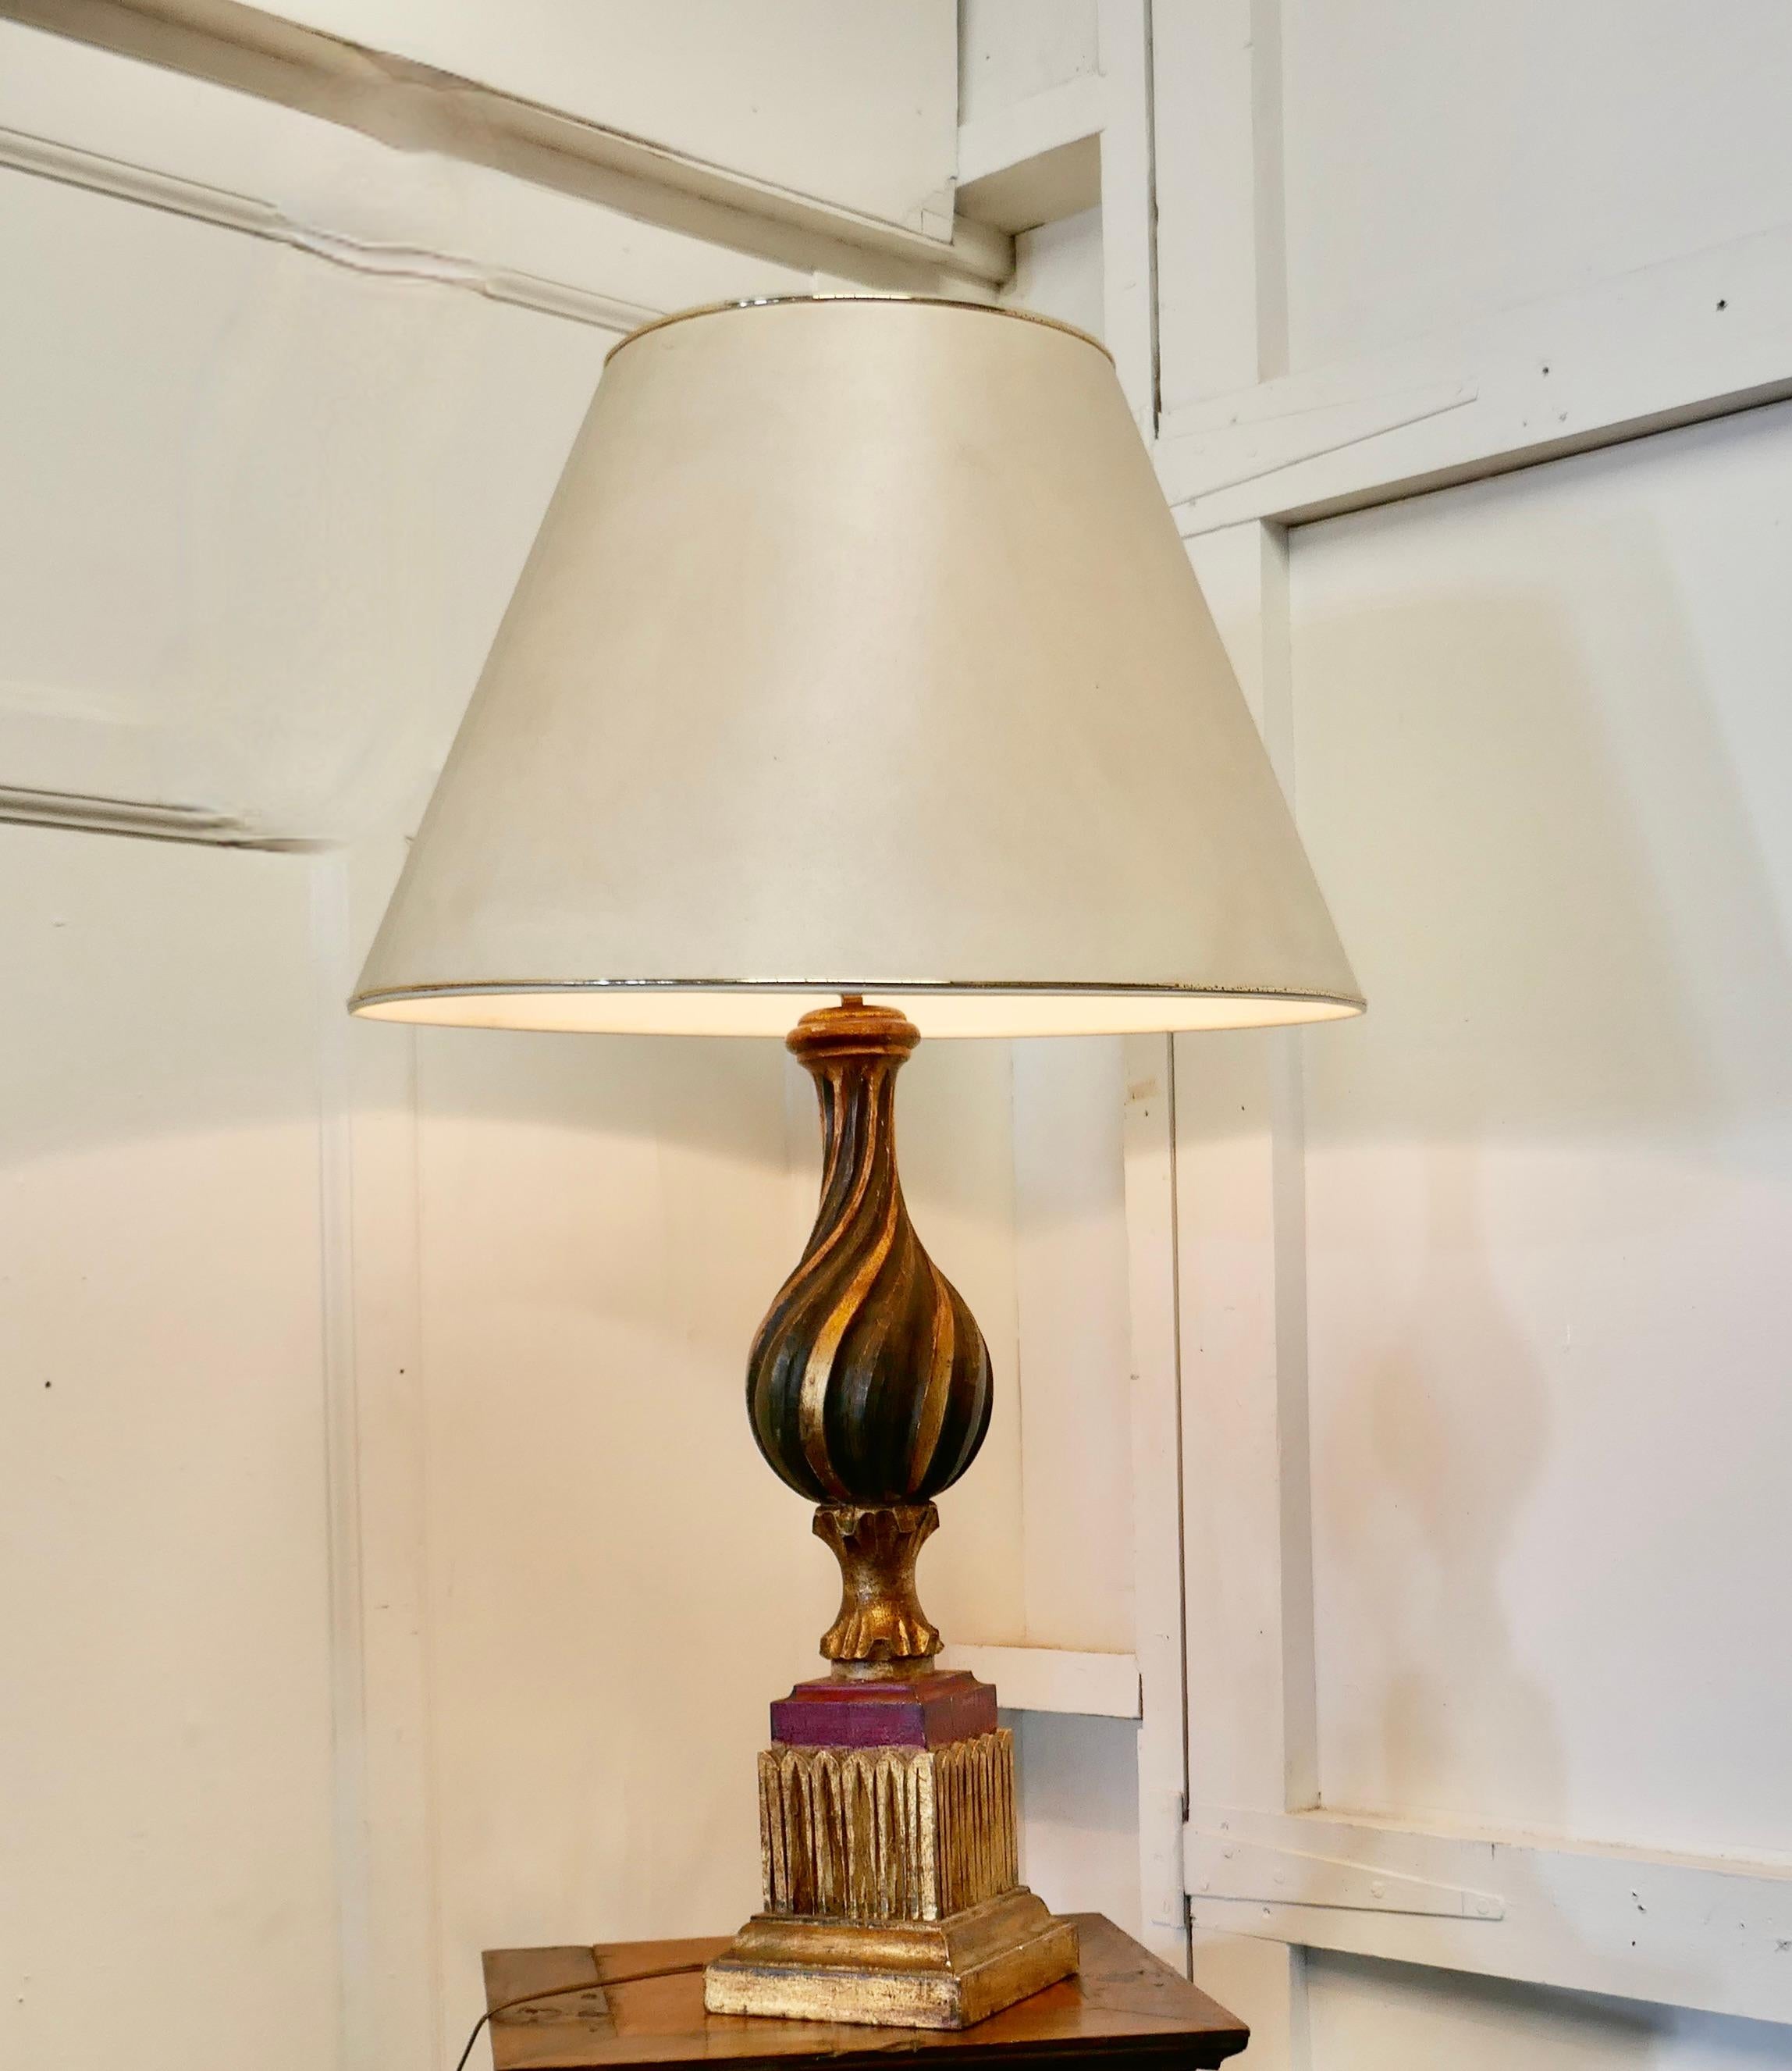 1920er Bulbous Folk Art gemalt Spanisch Lampe und Schatten

Dies ist eine attraktive bemalte Lampe, die Lampe hat eine handgeschnitzte bauchige Fair Ground Twisted Spalte, die in Gold, Grün und Rot gemalt ist, hat die Farbe jetzt in der Farbe